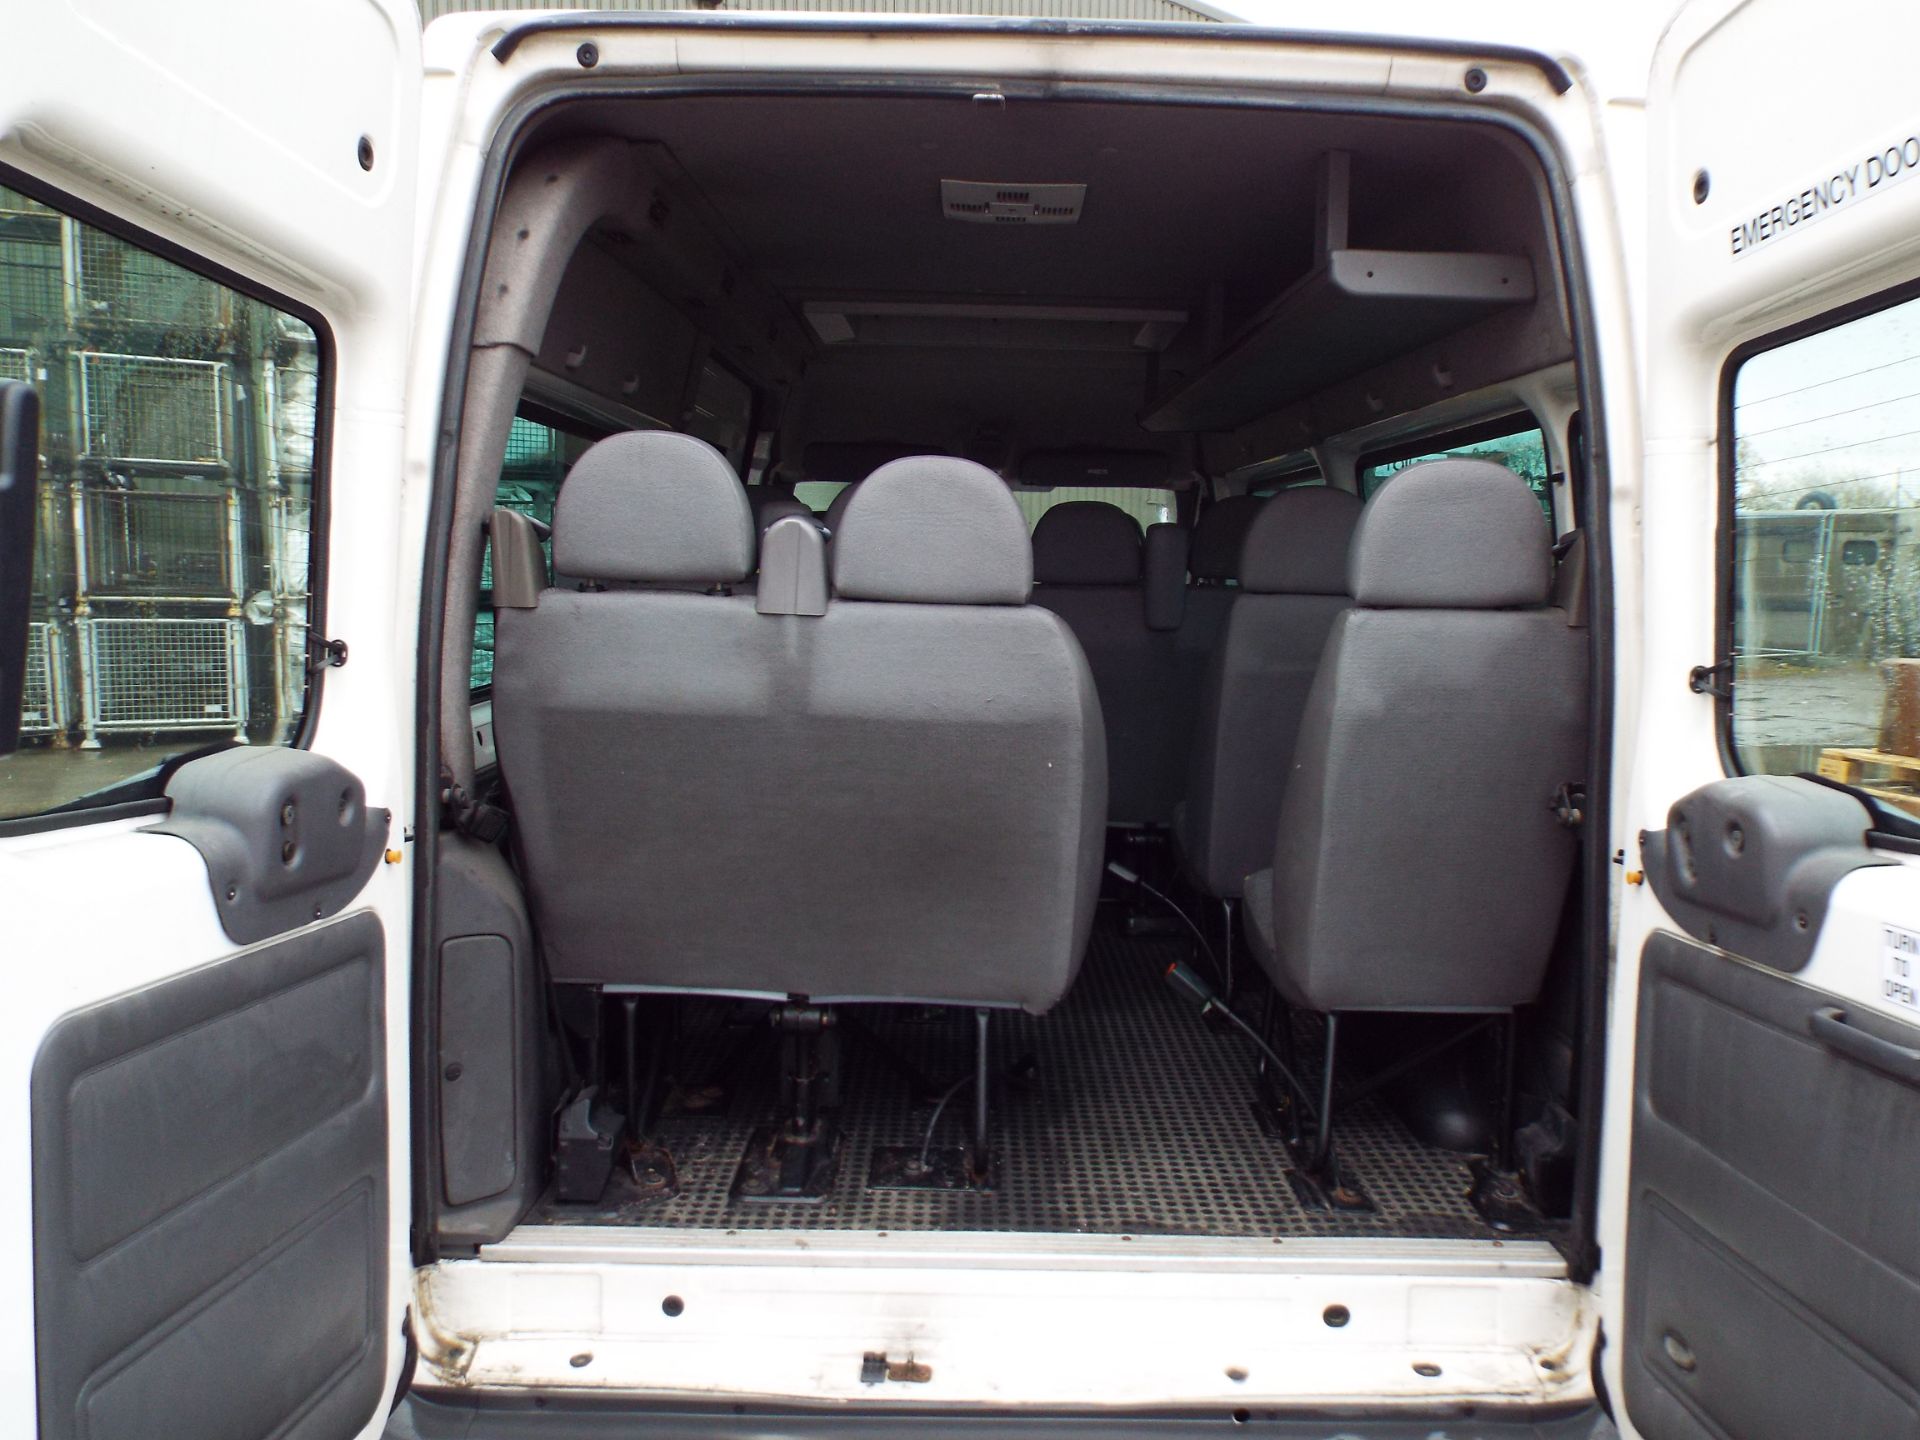 Ford Transit 11 Seat Minibus - Image 15 of 20